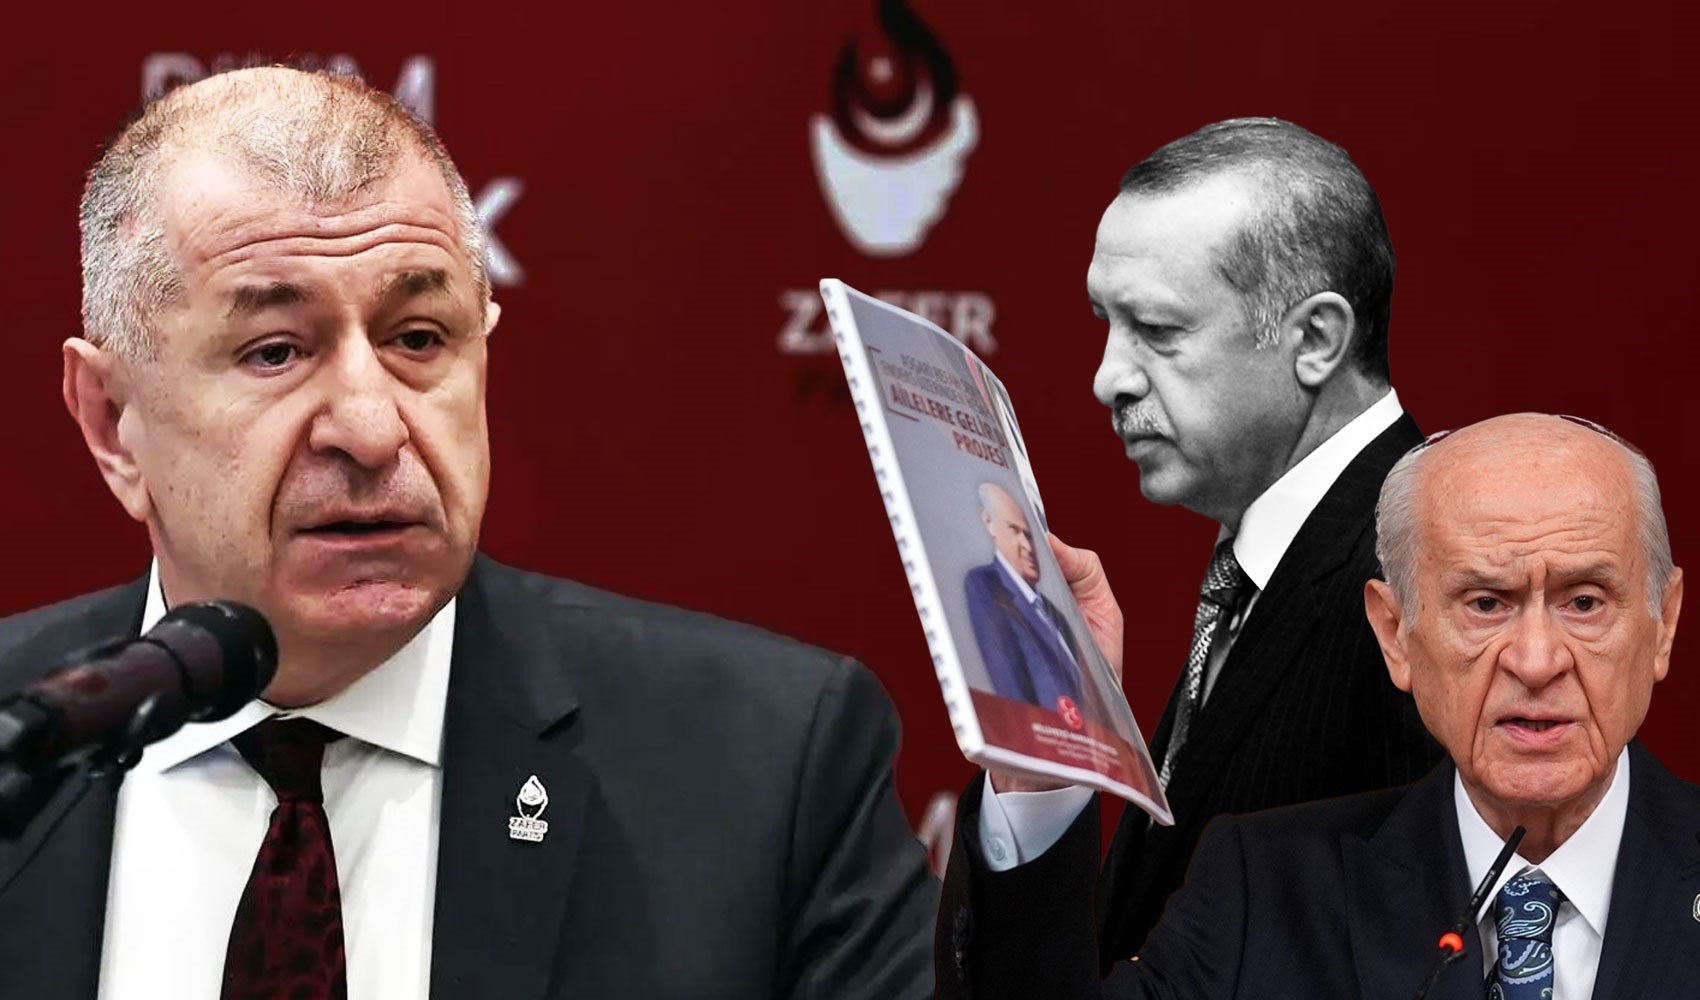 ‘AKP’nin karanlık ilişkiler dosyası’... Ümit Özdağ: Bahçeli Erdoğan’ı tehdit etti